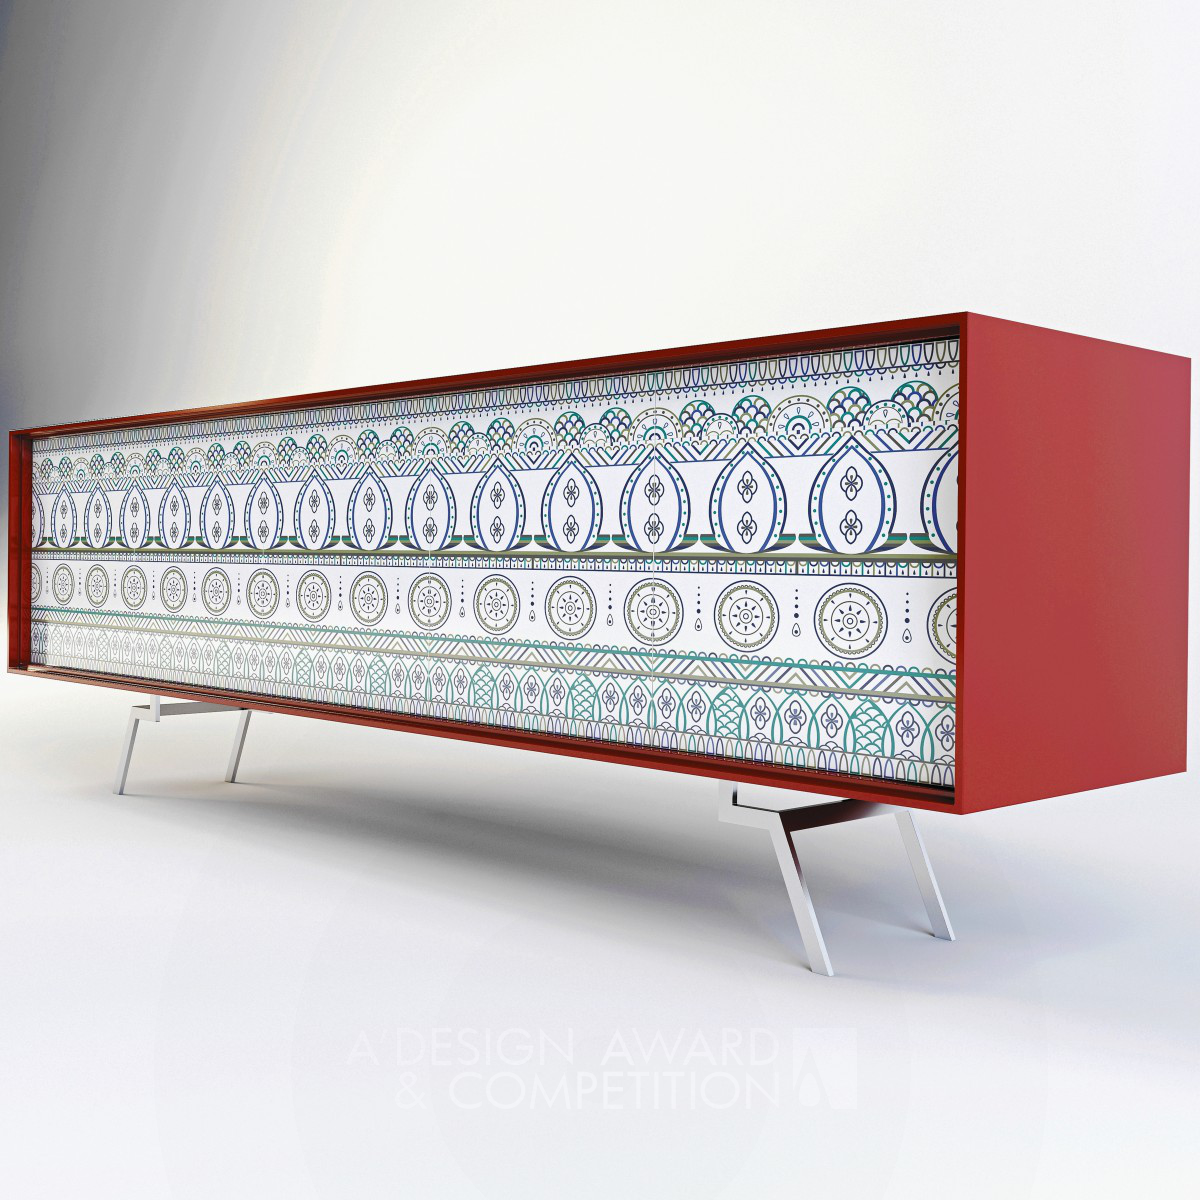 Xenofon Hector Grigorelis wins Bronze at the prestigious A' Furniture Design Award with Asa Sideboard.